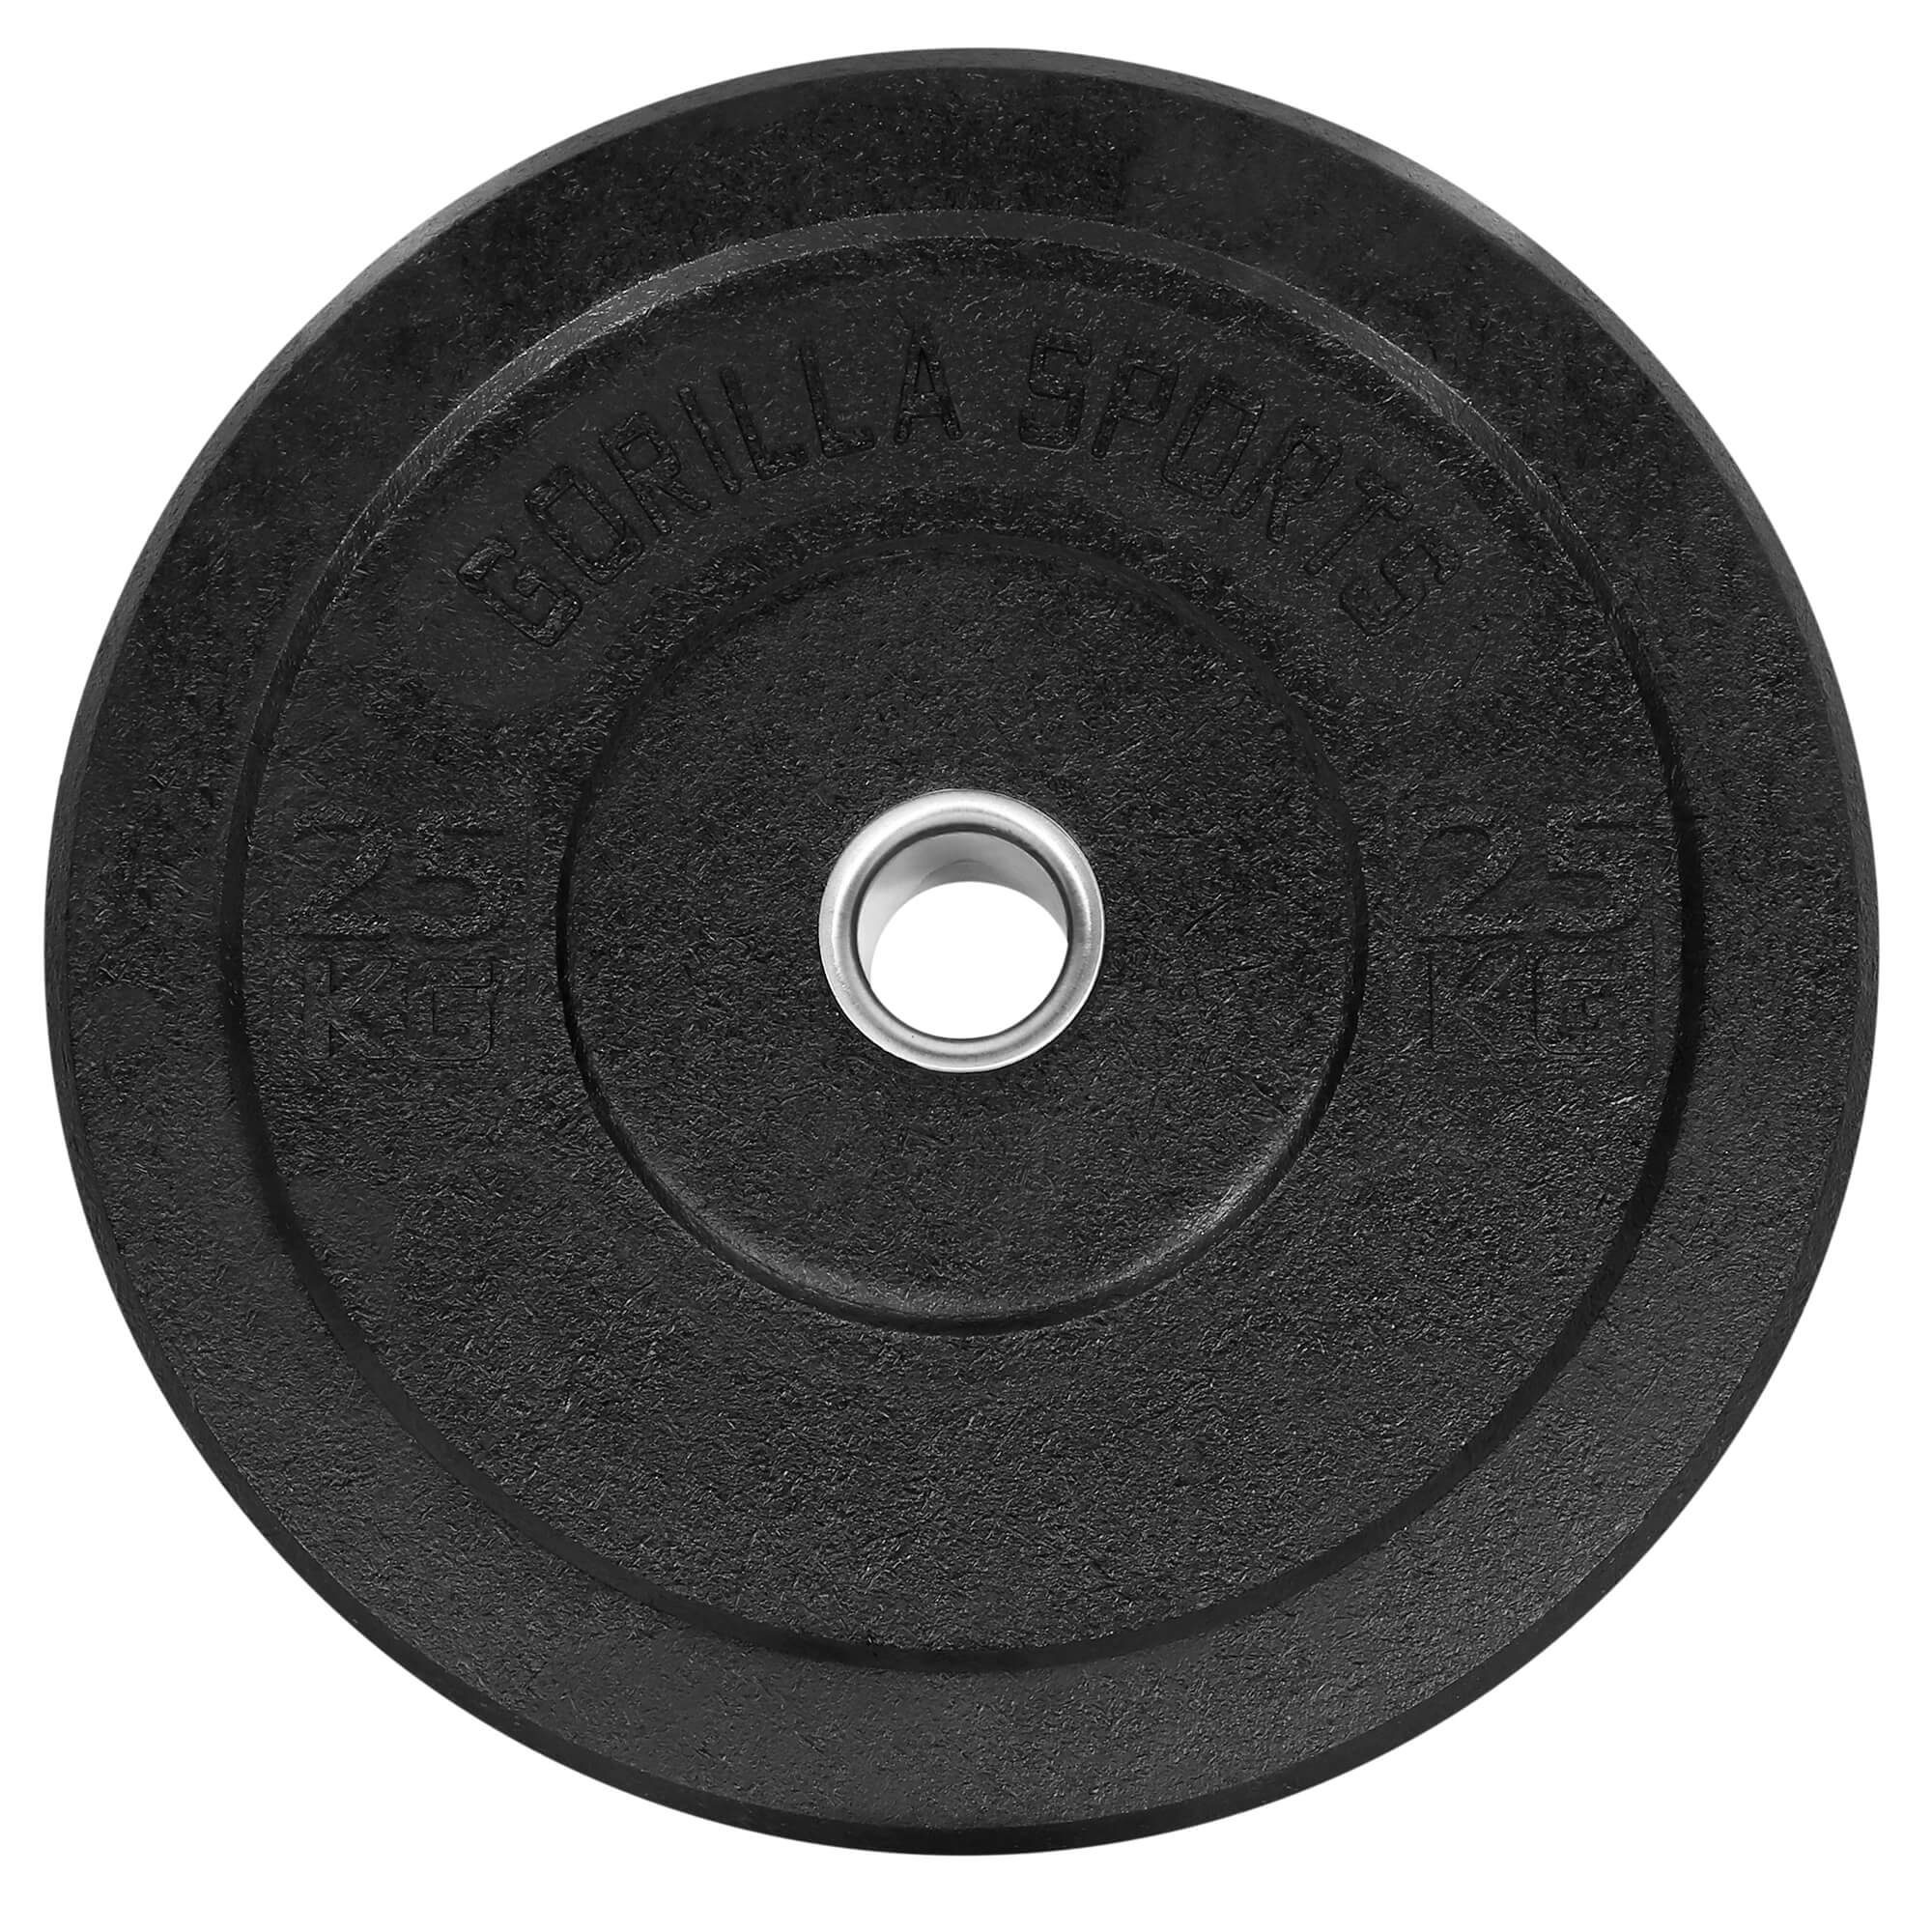 GORILLA Olympia,5-50kg Hantelscheiben 25kg Gewichte,Einzeln/Set,Bumper Plates,Gewichtsscheiben SPORTS